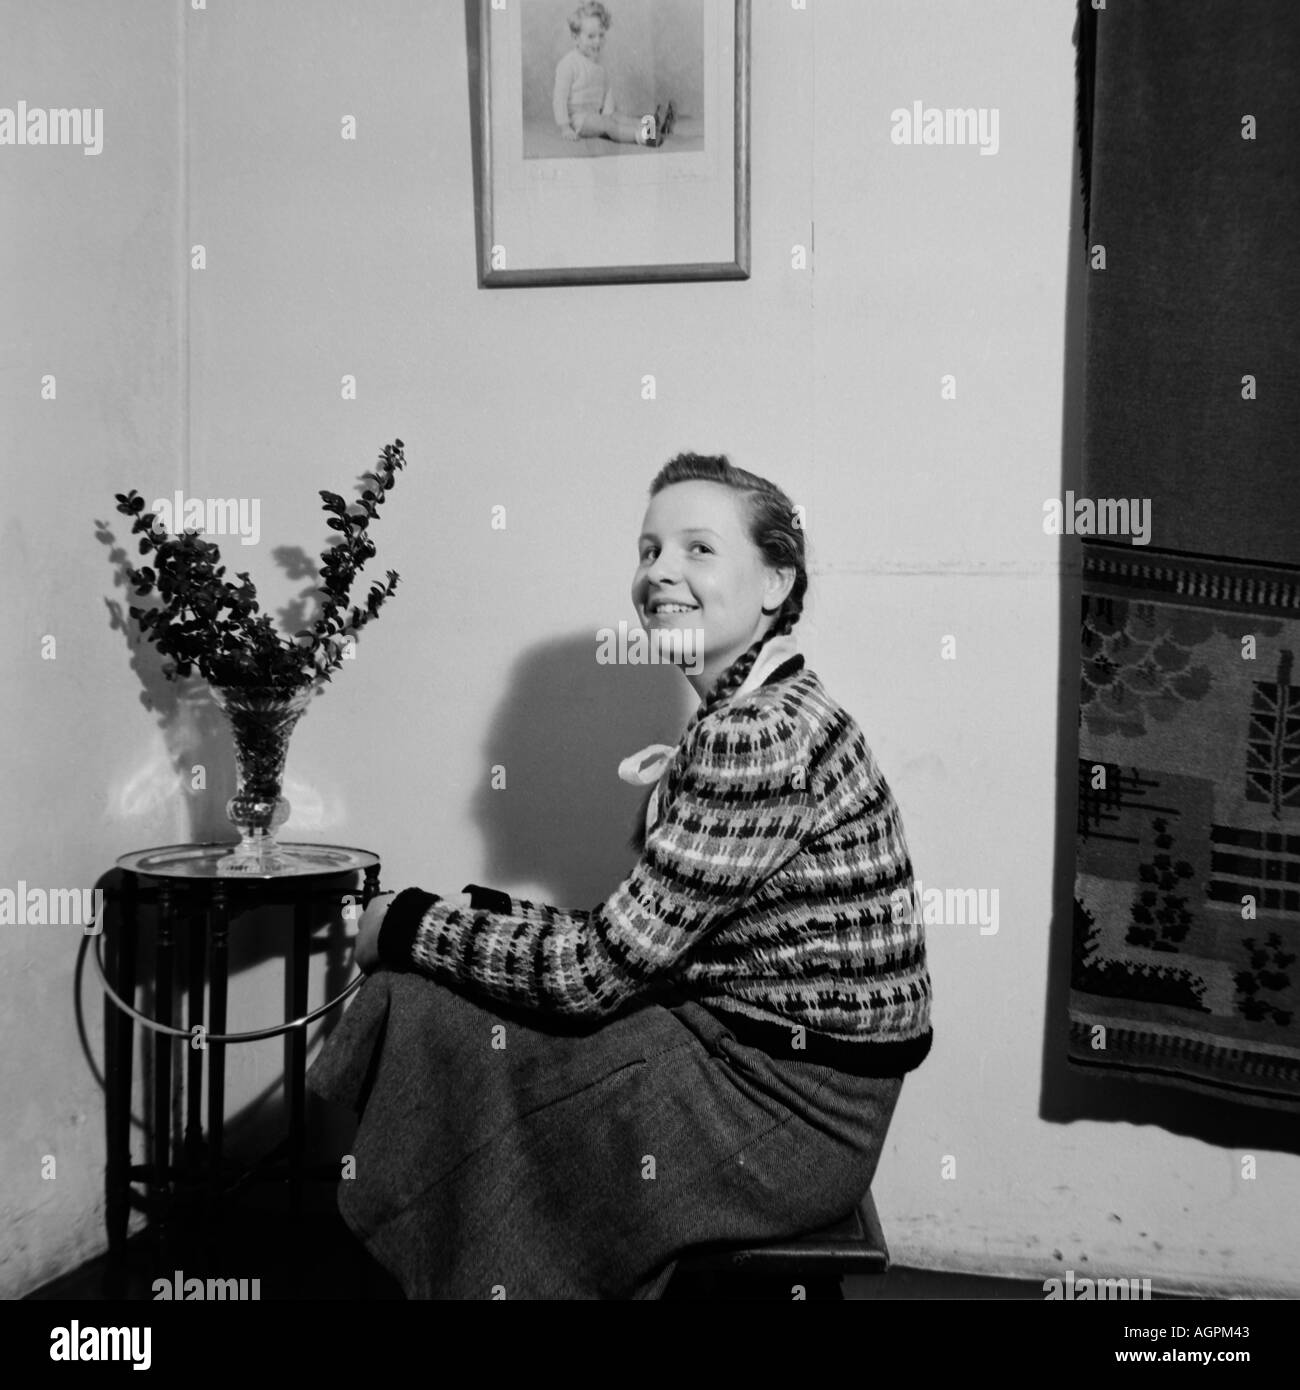 OLD VINTAGE PHOTO DE FAMILLE CLICHÉ GIRL SITTING ON STOOL À CÔTÉ DE TABLE AVEC Vase de fleurs vers 1950 Banque D'Images